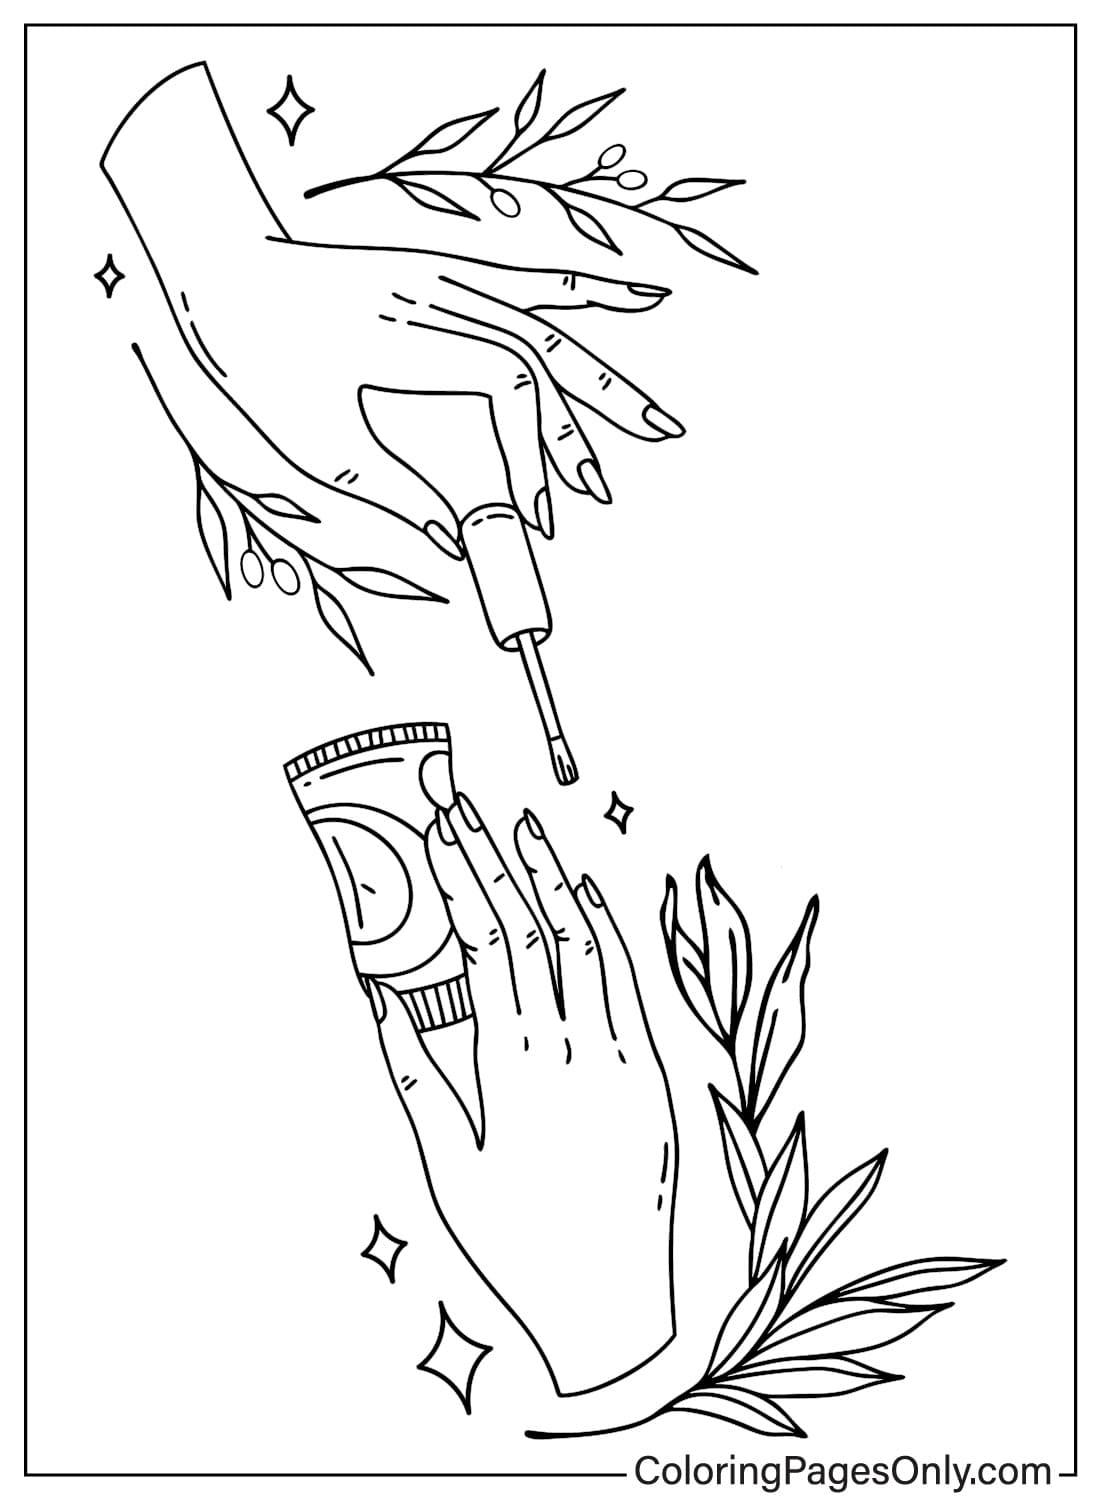 Dibujo de uñas Página para colorear de Nails